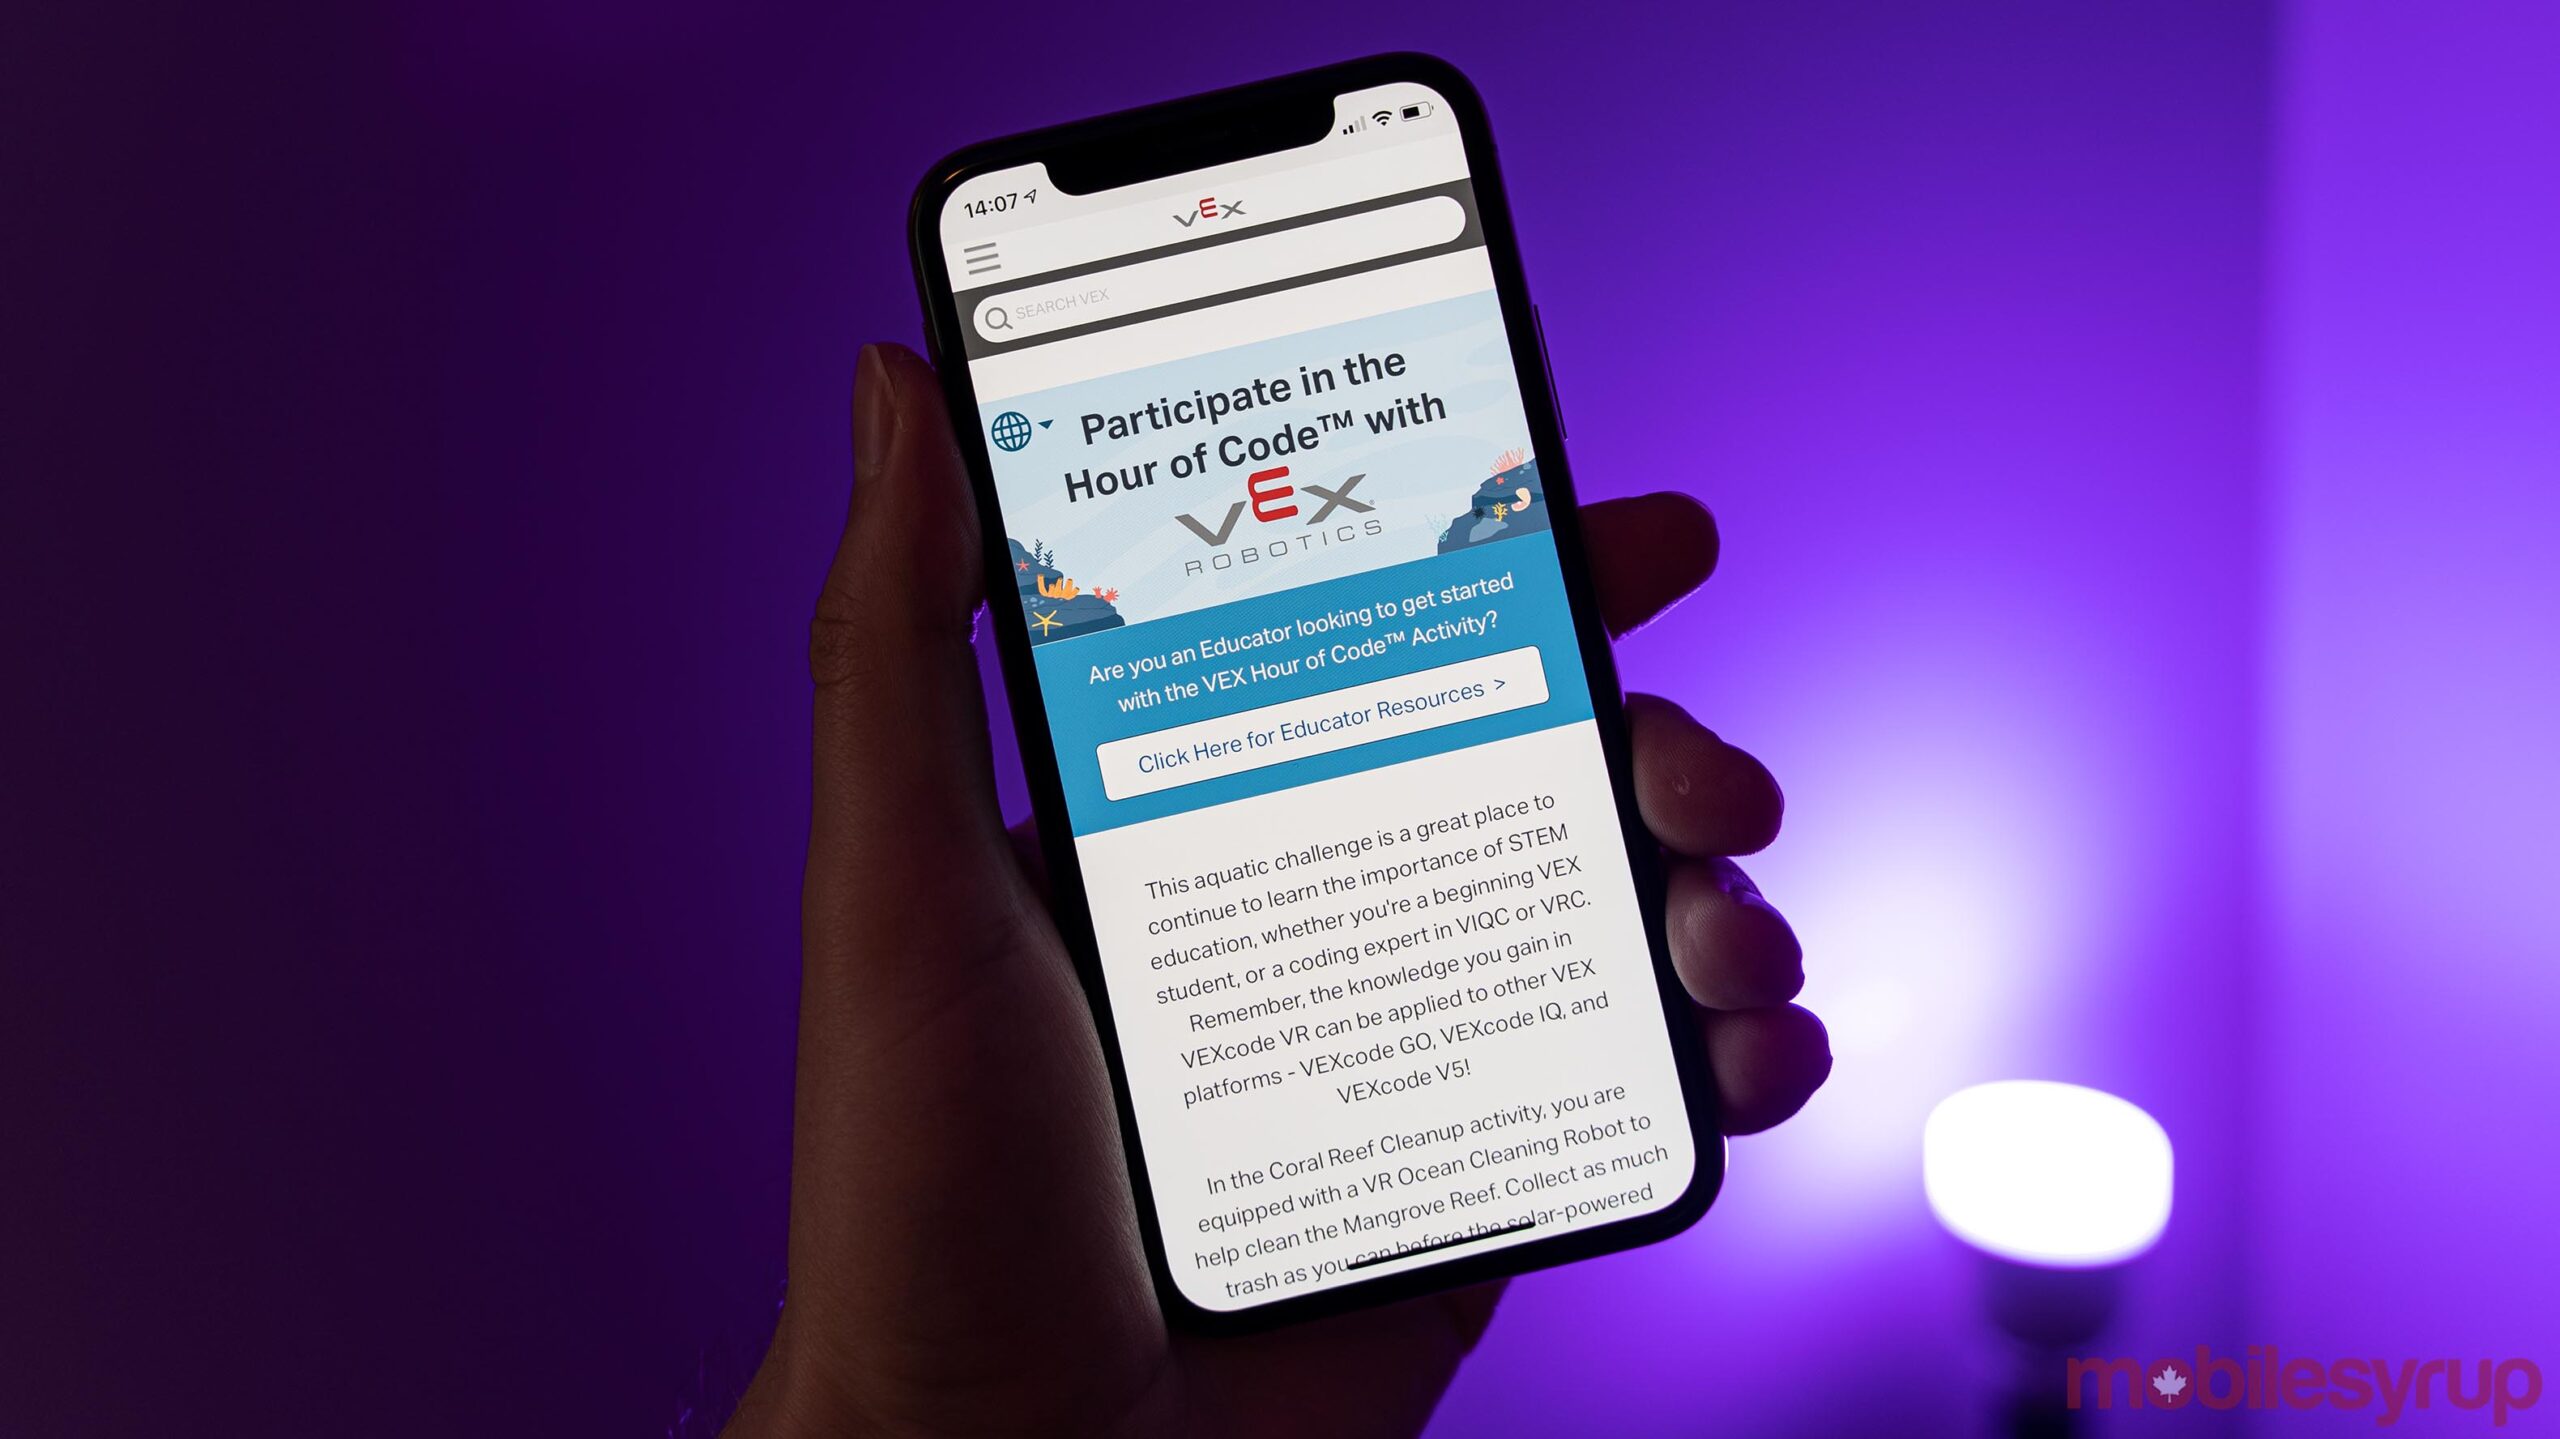 Vex Robotics Hour of Code site on iPhone